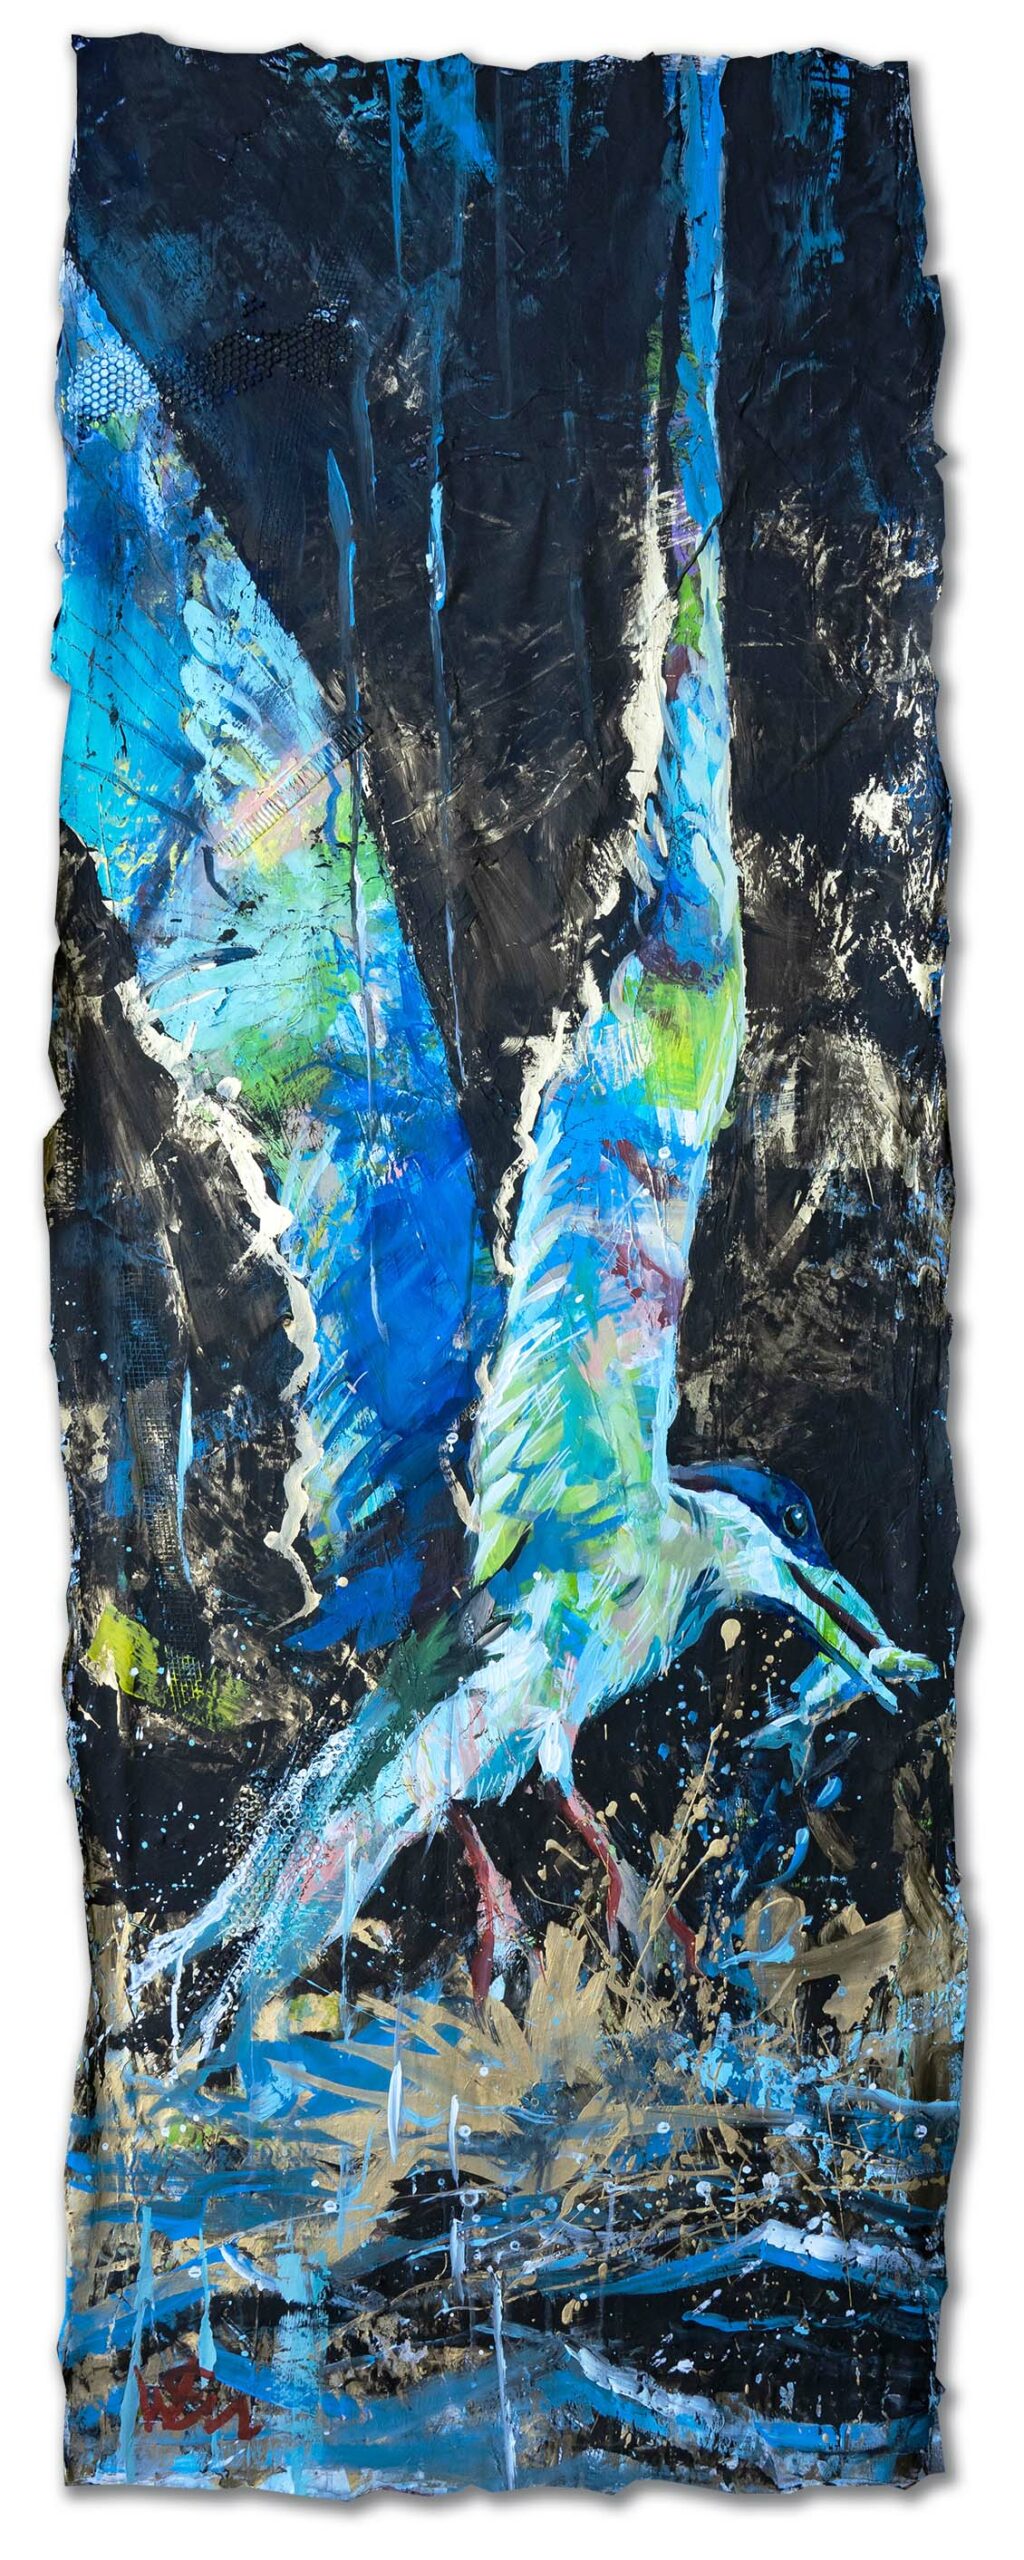 2021_34 – Flussseeschwalbe_60 x 120cm, Acryl auf Leinwand